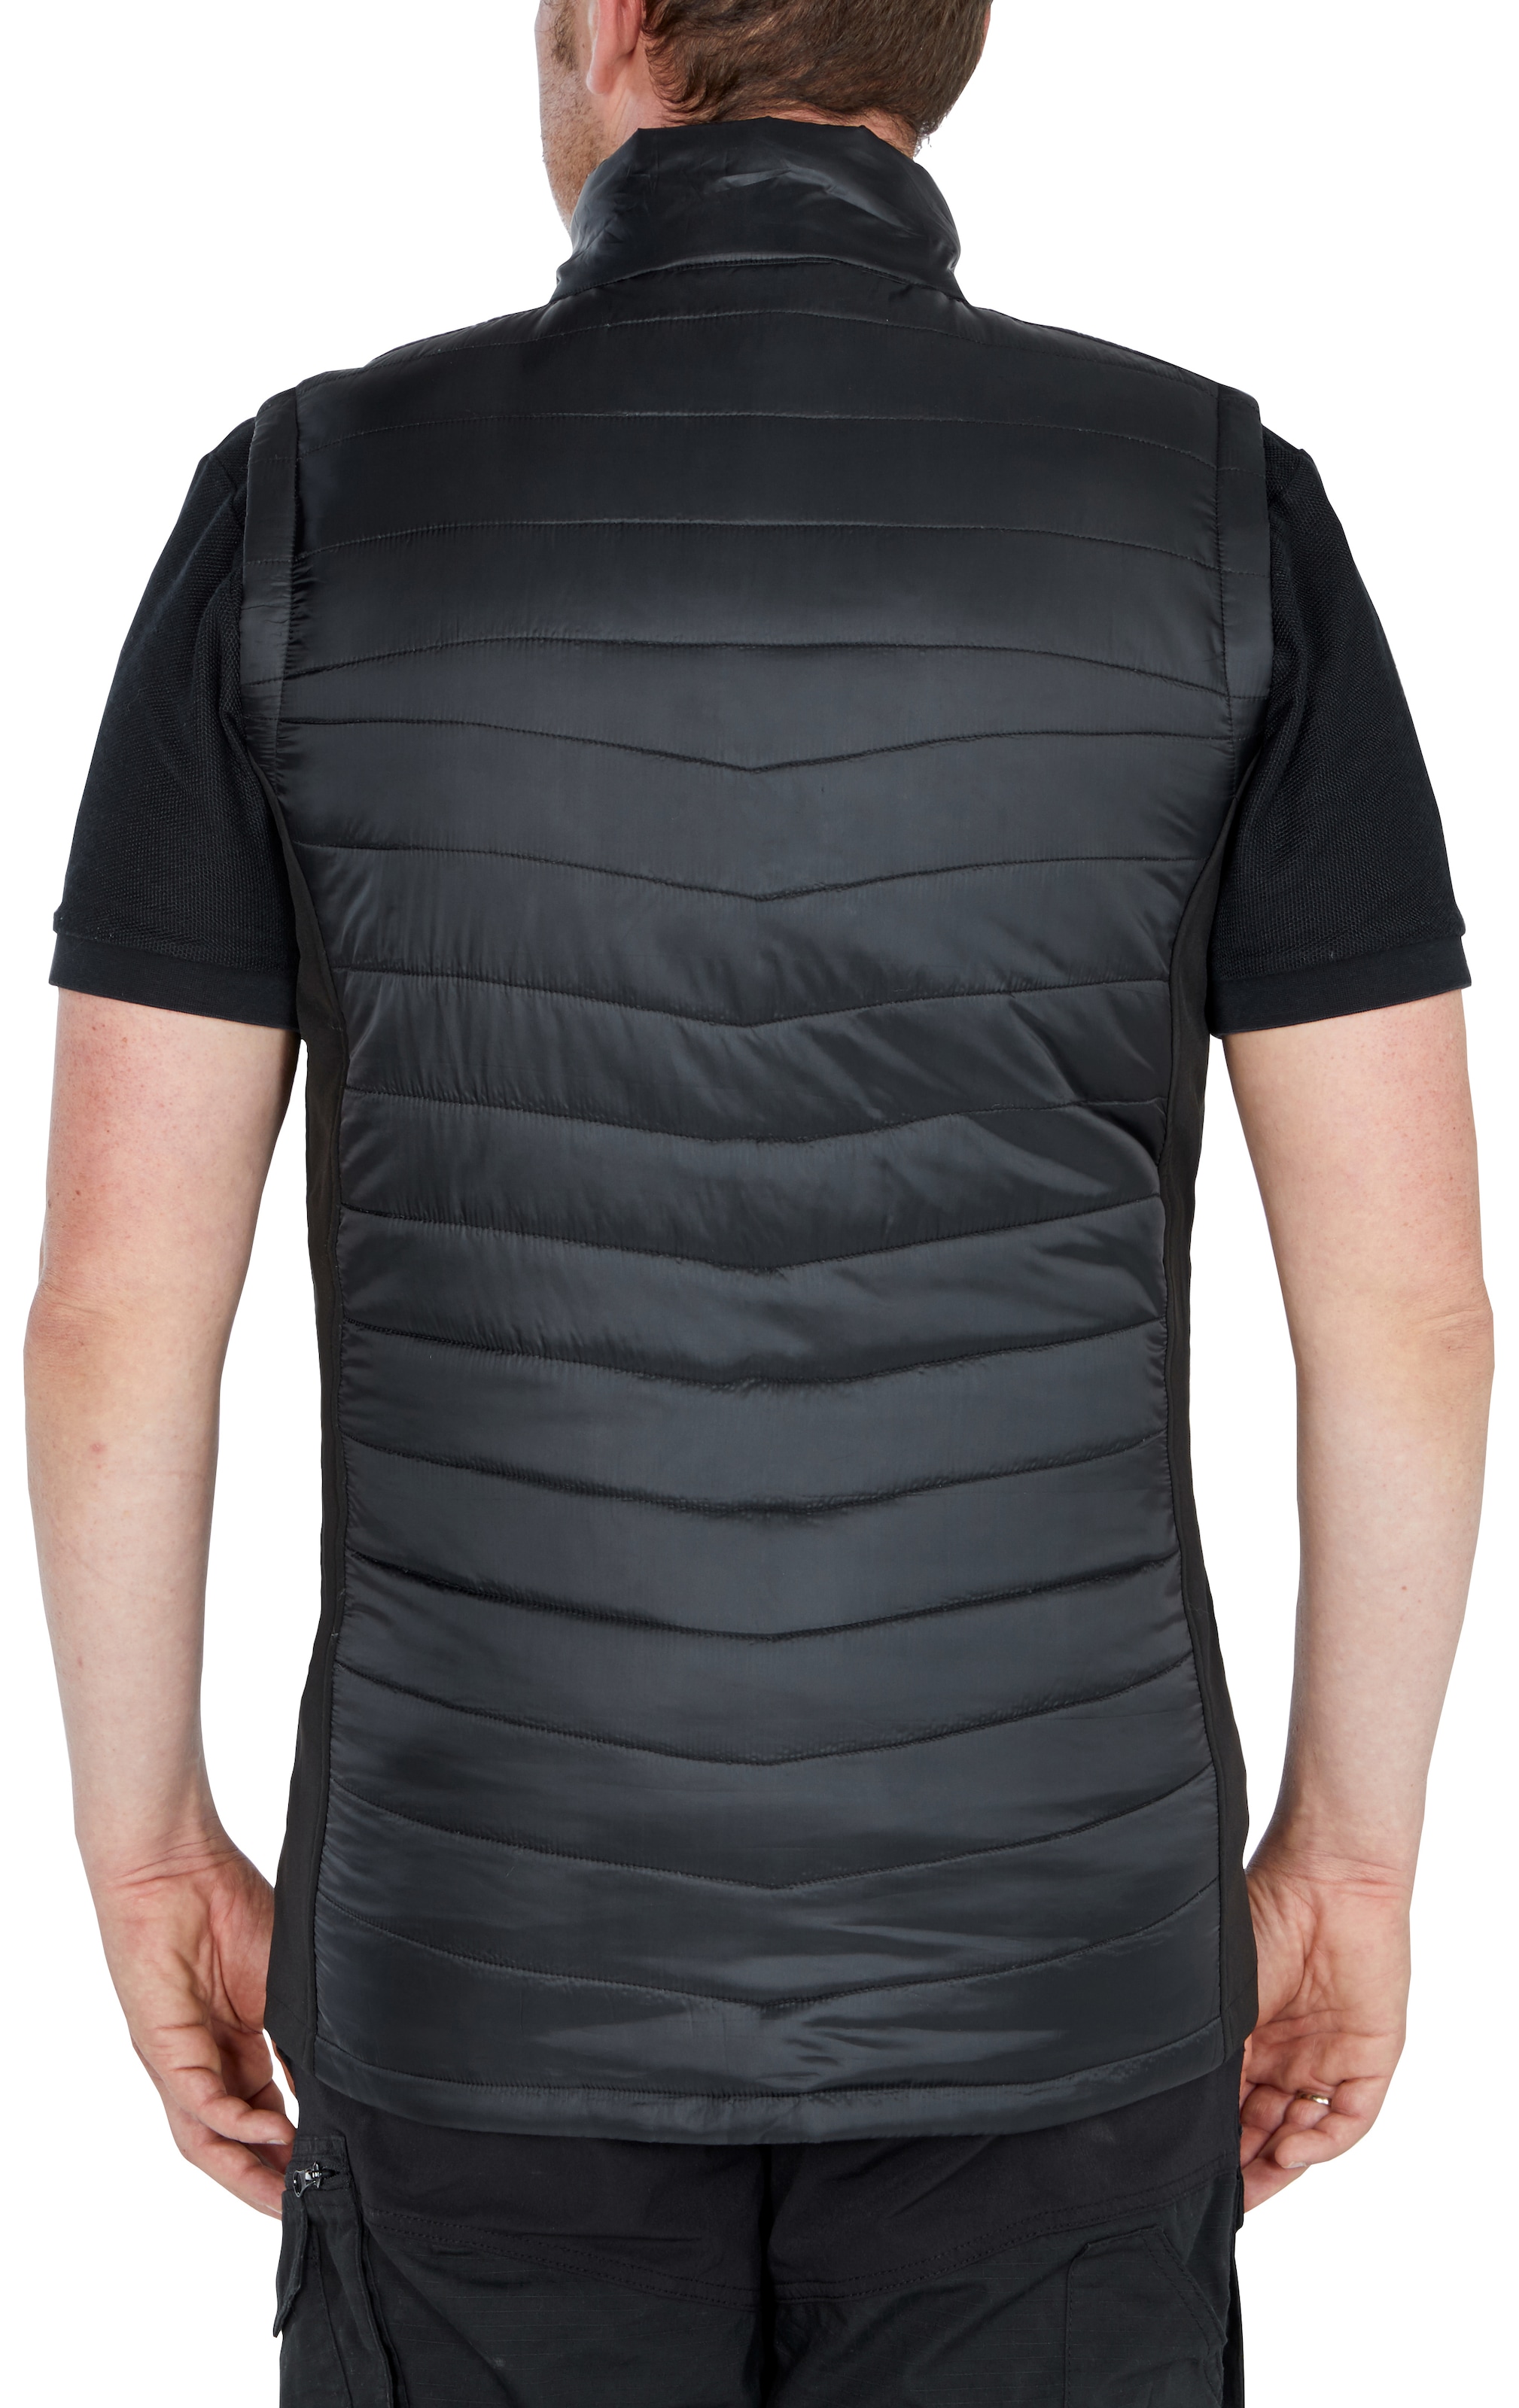 Northern Country Arbeitsweste leicht Kinnschutz verlängerter Taschen) und mit mit 3 durch elastische Seiteneinsätze (bequeme Passform wärmend Rücken angenehm